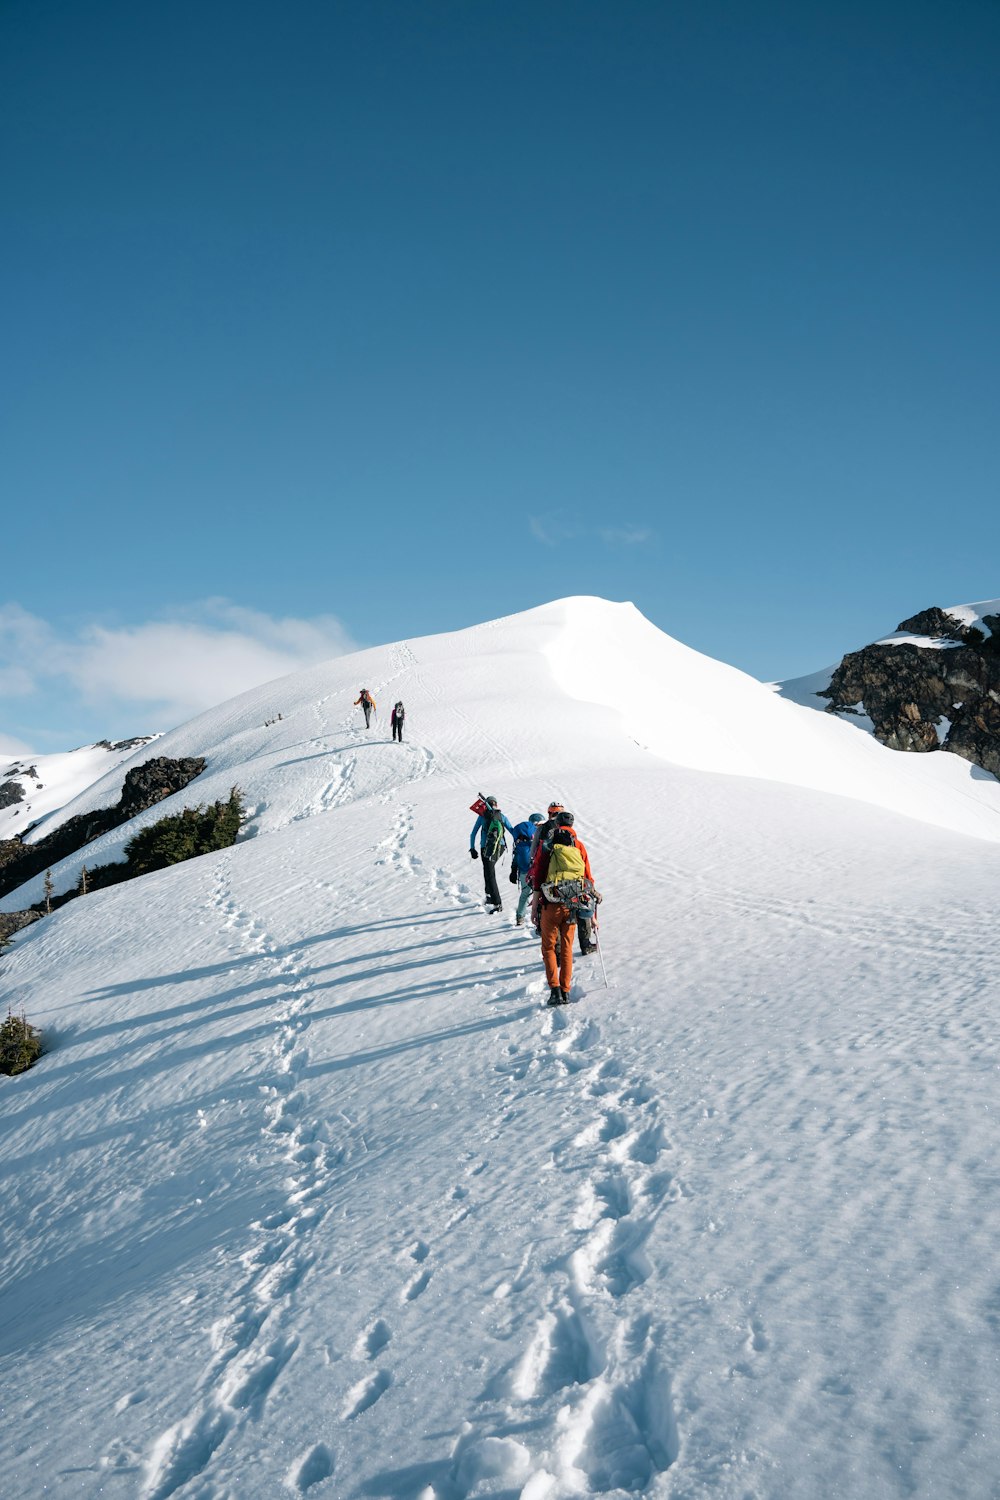 Un grupo de personas subiendo una montaña nevada